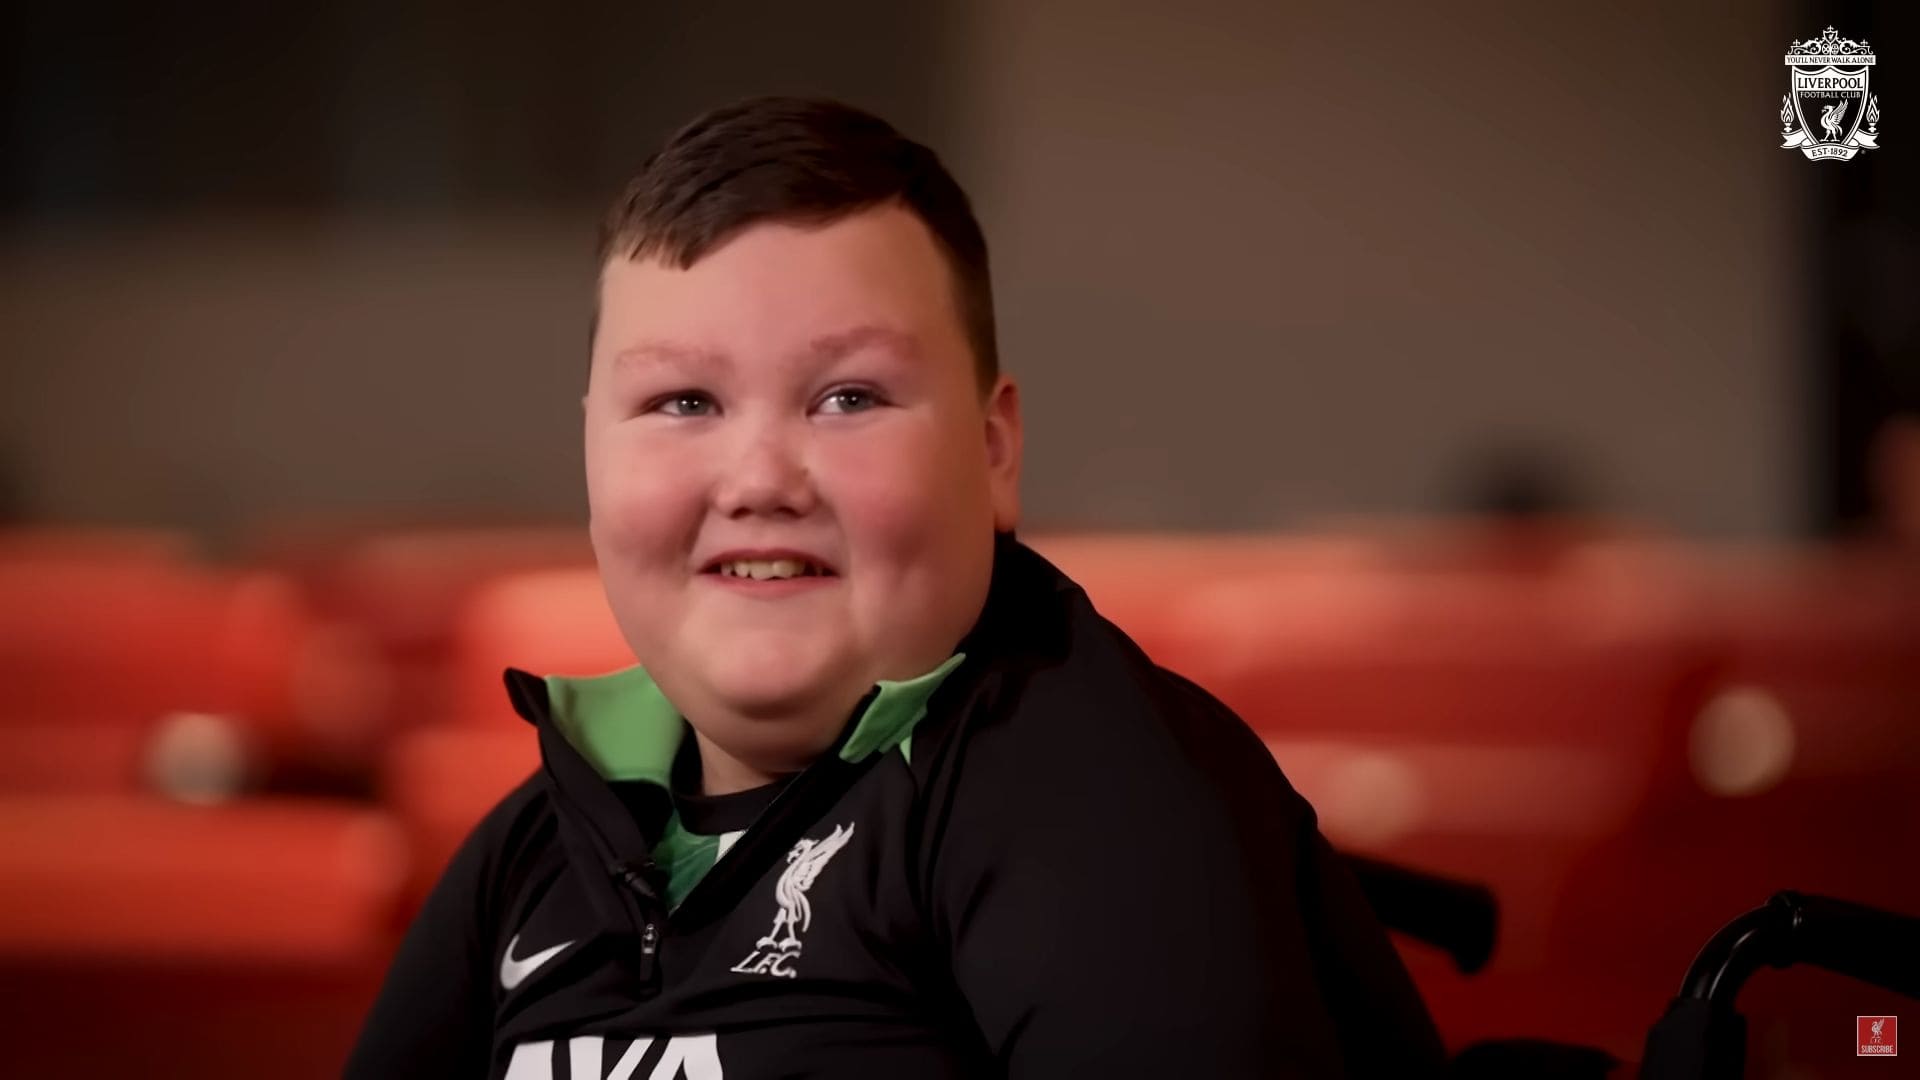 Dárie, un niño con discapacidad, cumple su sueño y conoce a los jugadores del Liverpool